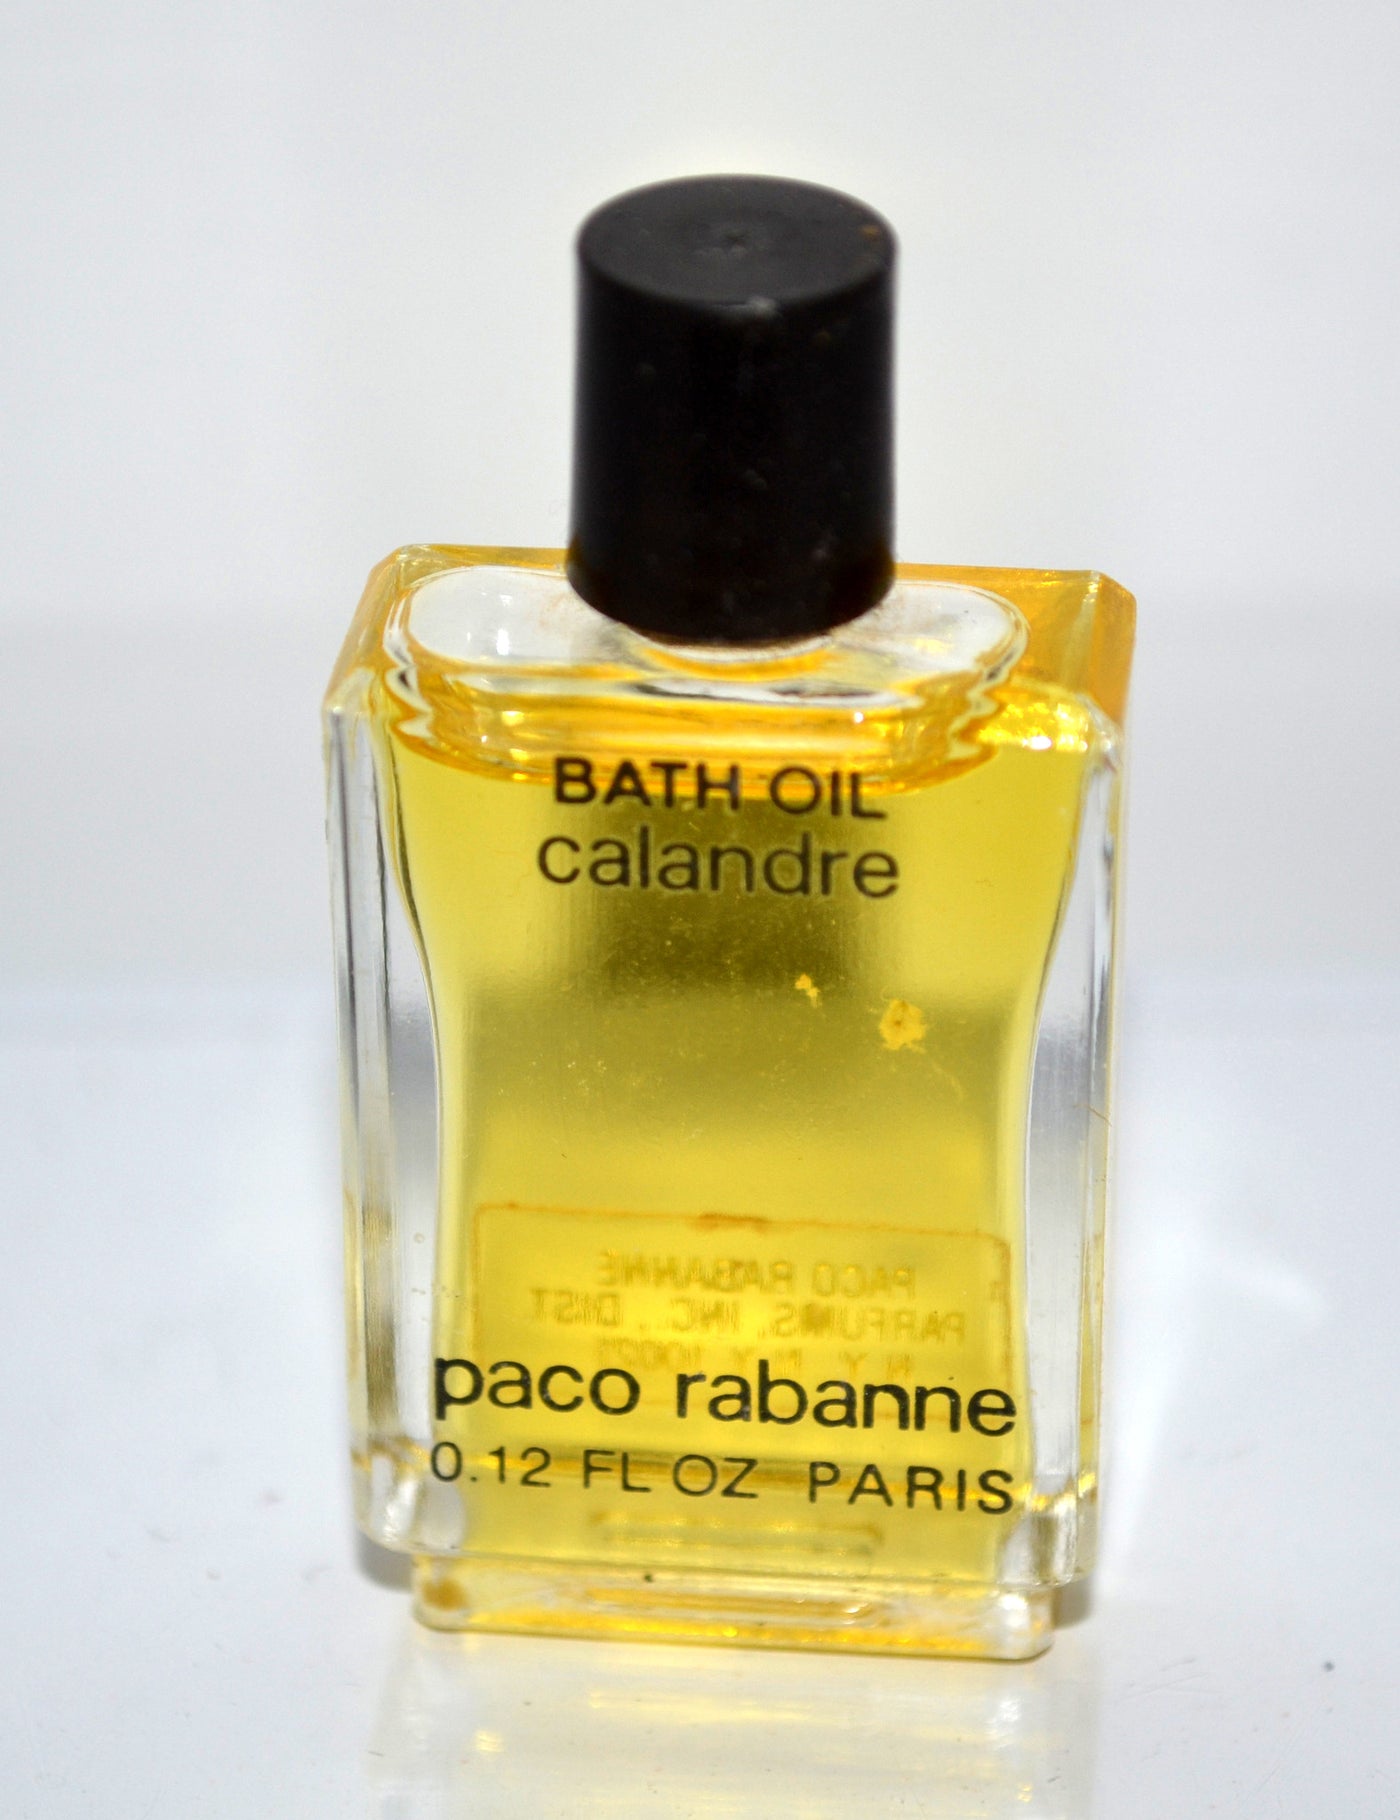 Paco Rabanne Calandre Bath Oil